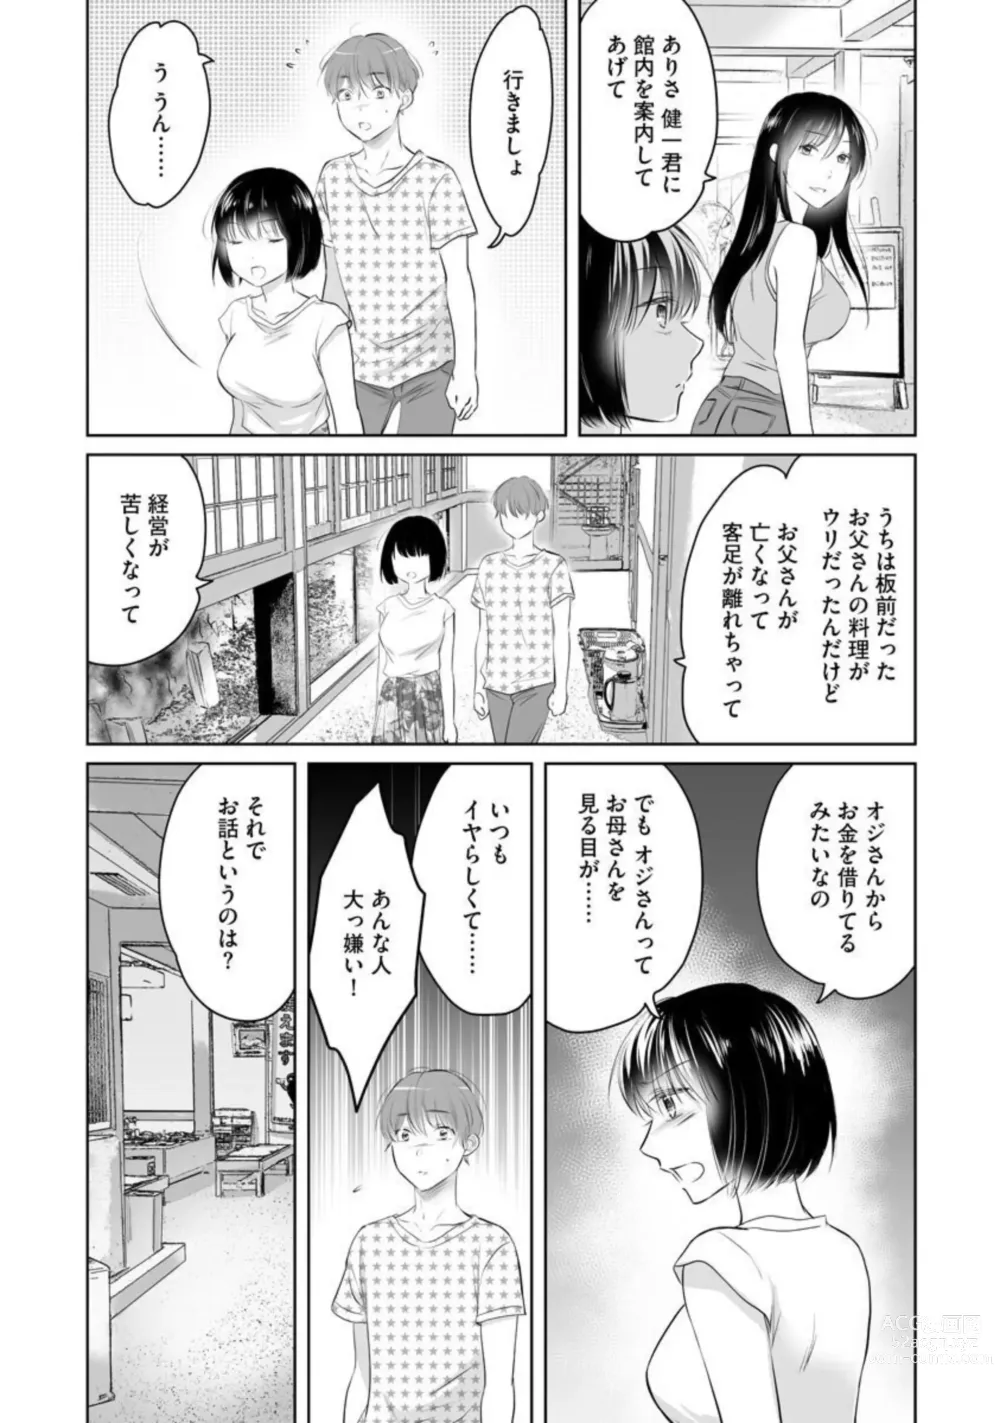 Page 14 of manga Nozoki ana oba to Boku no Himitsu no Natsuyasumi 1-2